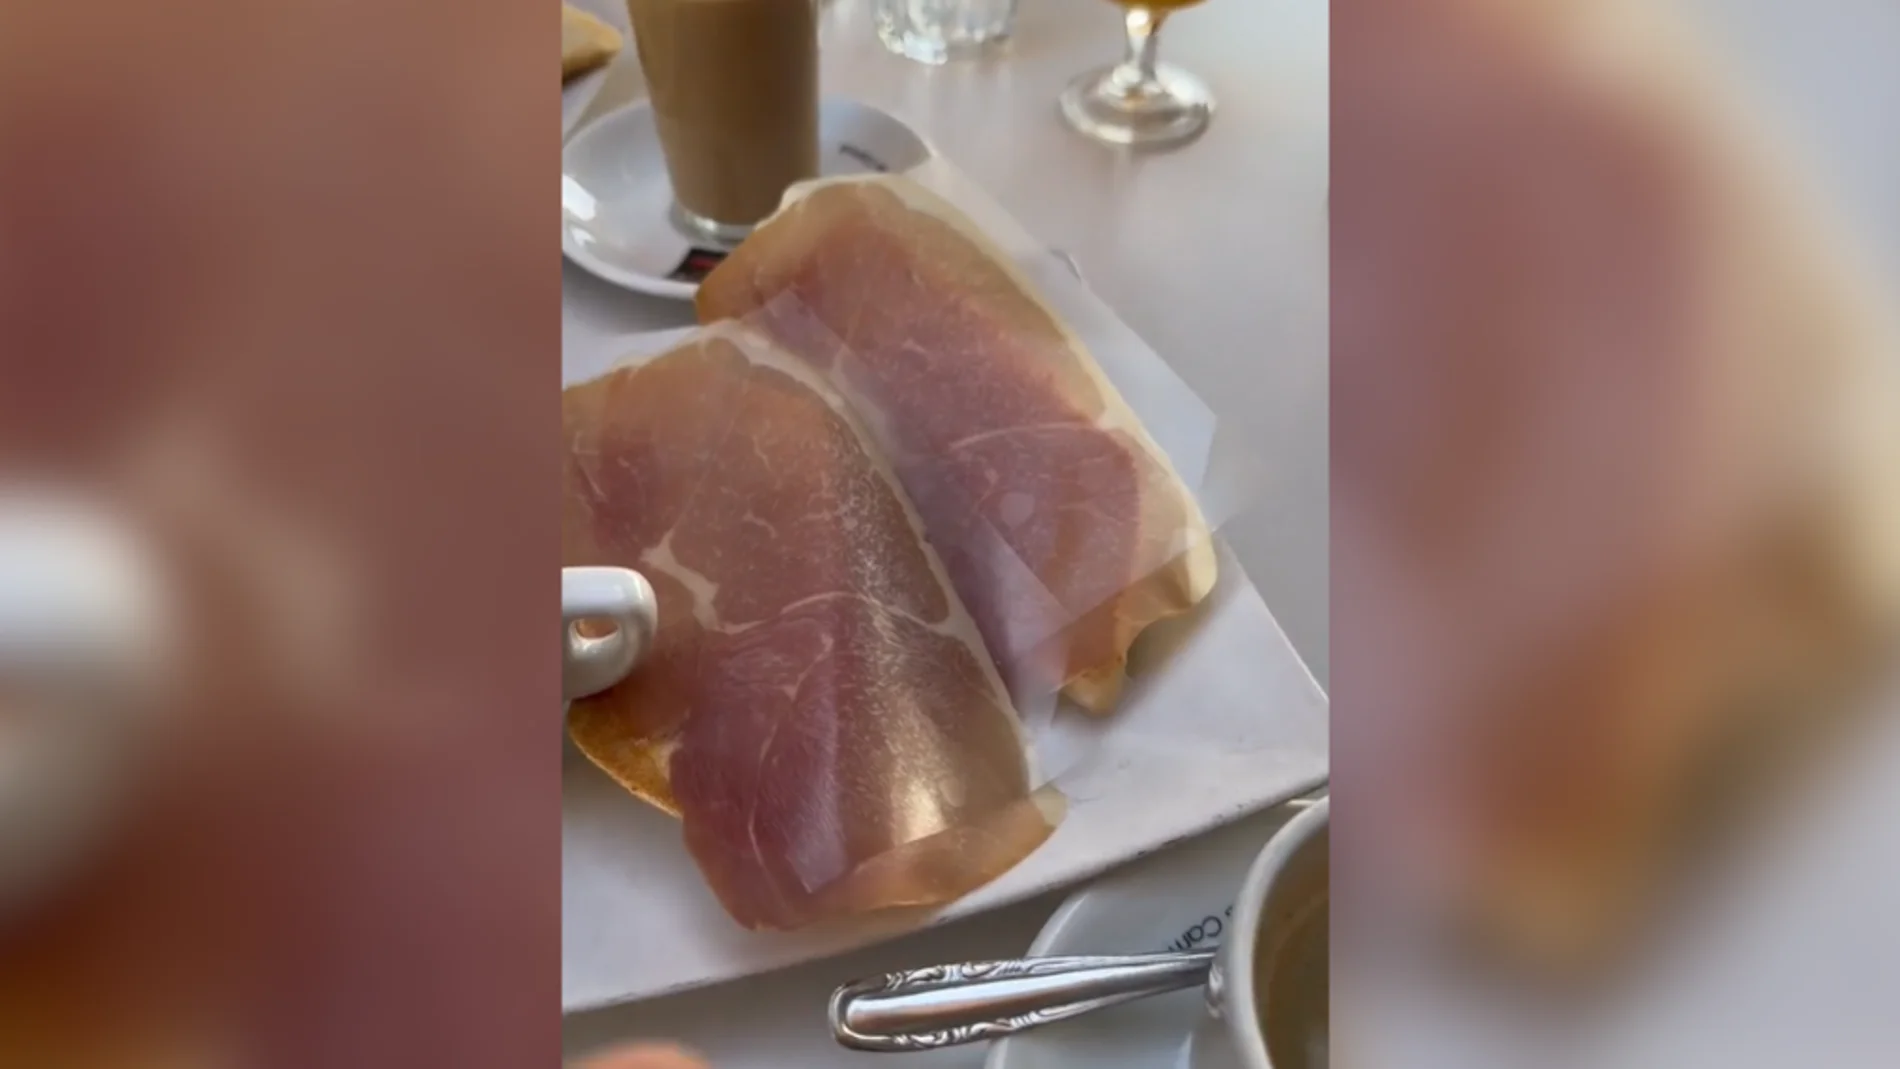  'Cenando con Pablo' desayuna lonchas de jamón con plástico en Getafe